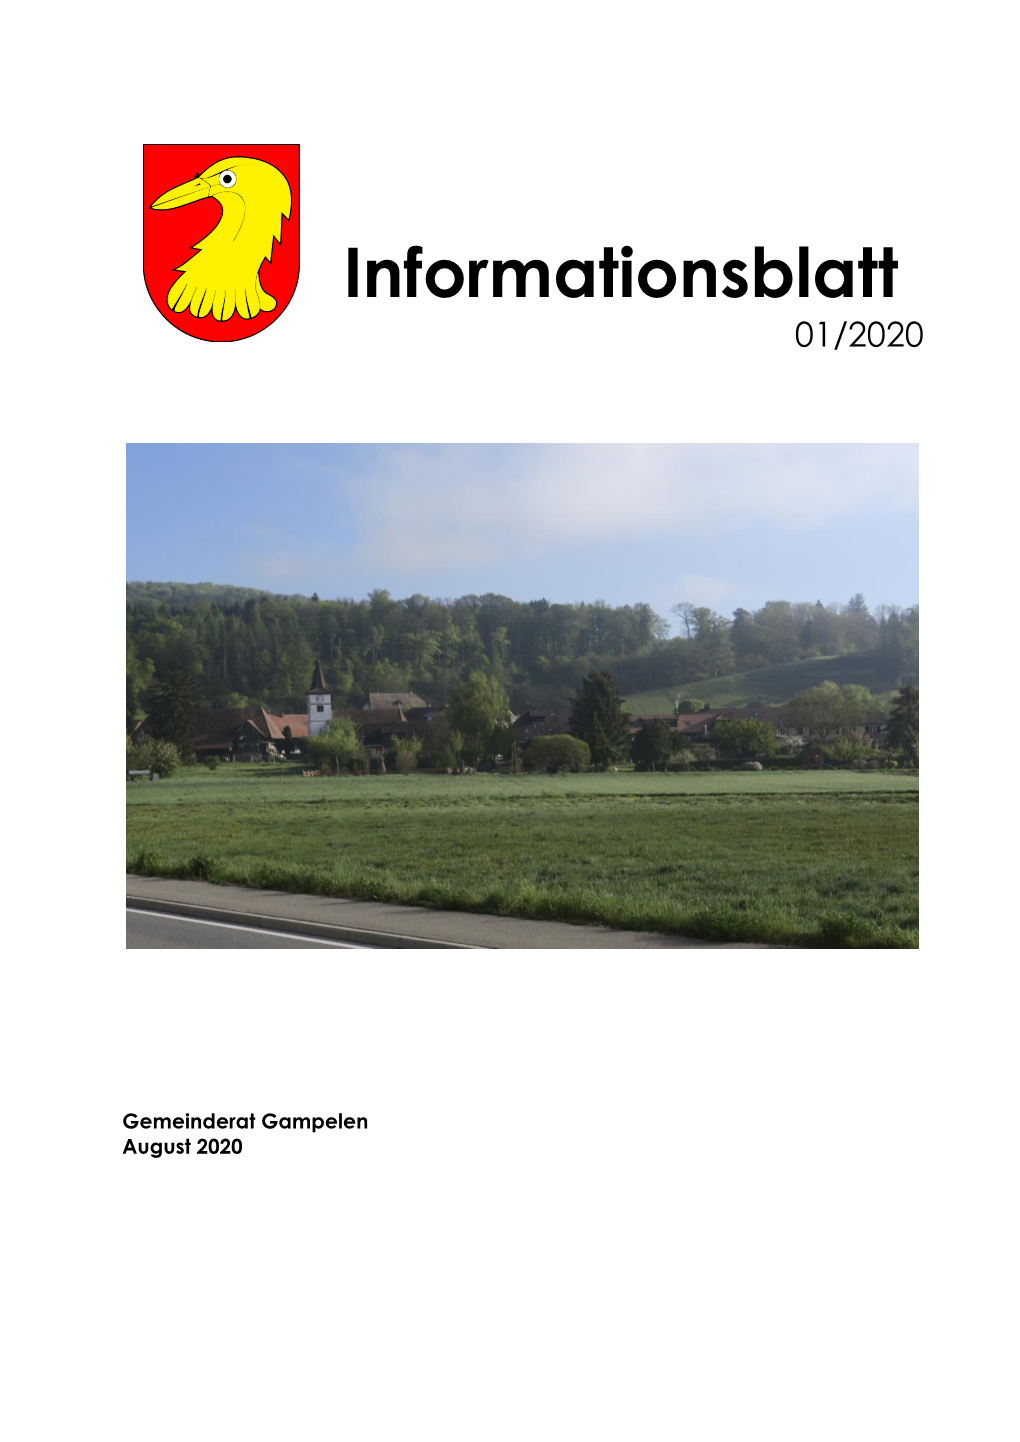 Informationsblatt 01/2020